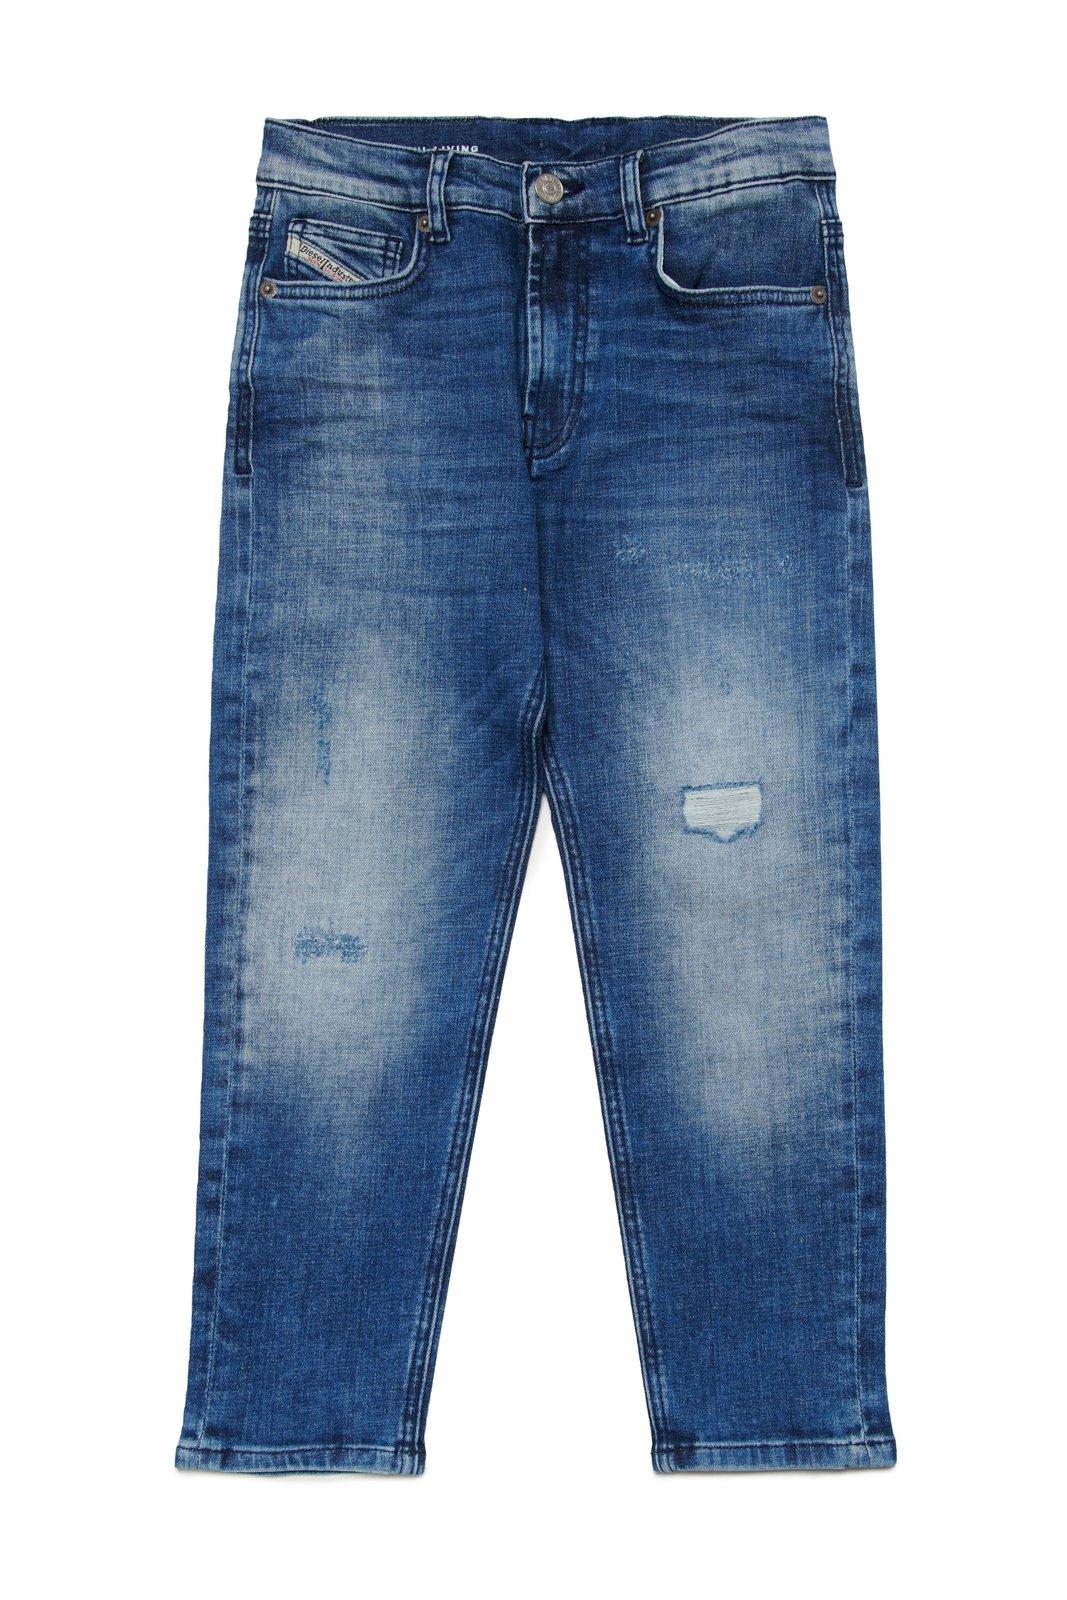 Shop Diesel D-lucas-j Distressed Straight-leg Jeans